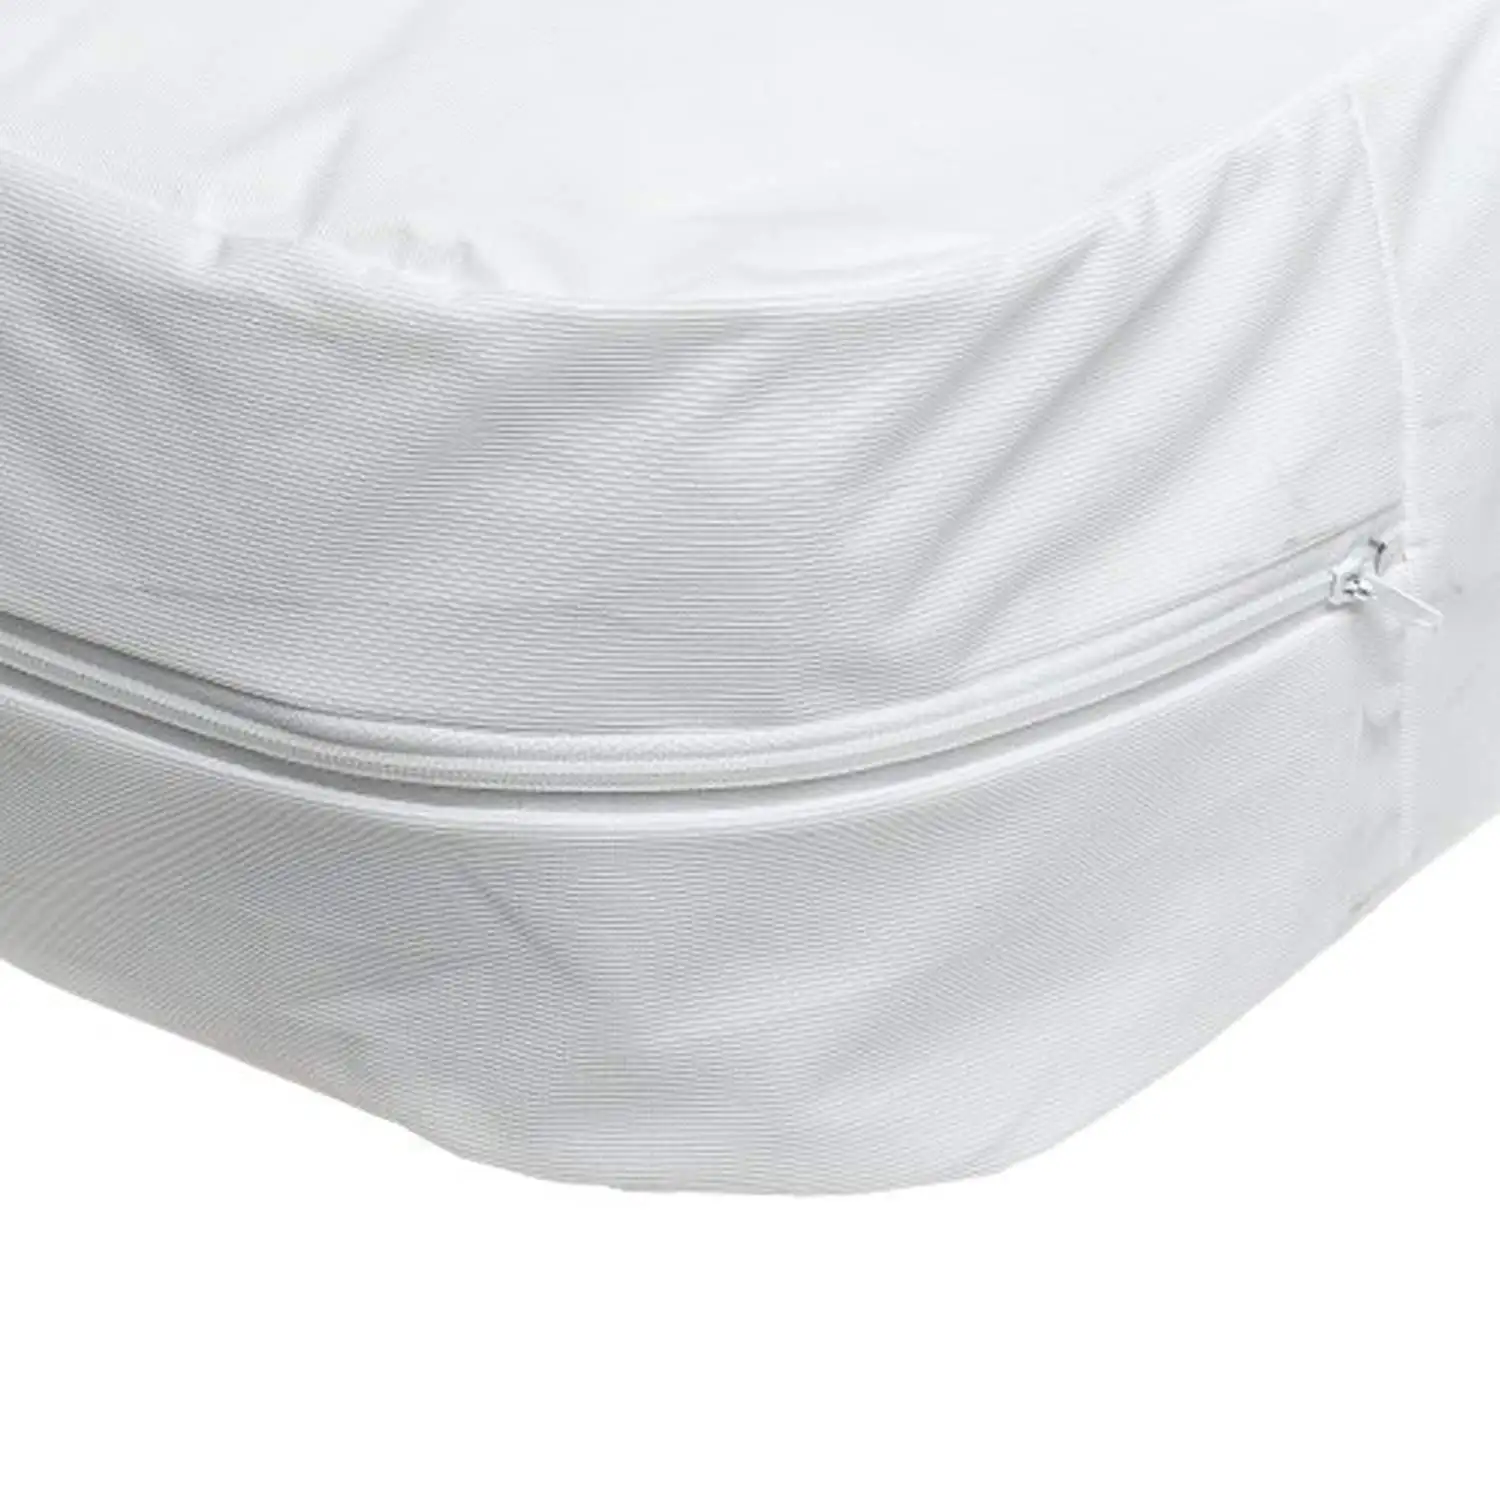 ผ้าคลุมที่นอนกันแมลงแบบมีซิปกันน้ำได้6ด้าน,ผ้าคลุมที่นอนตัวป้องกันฟูก